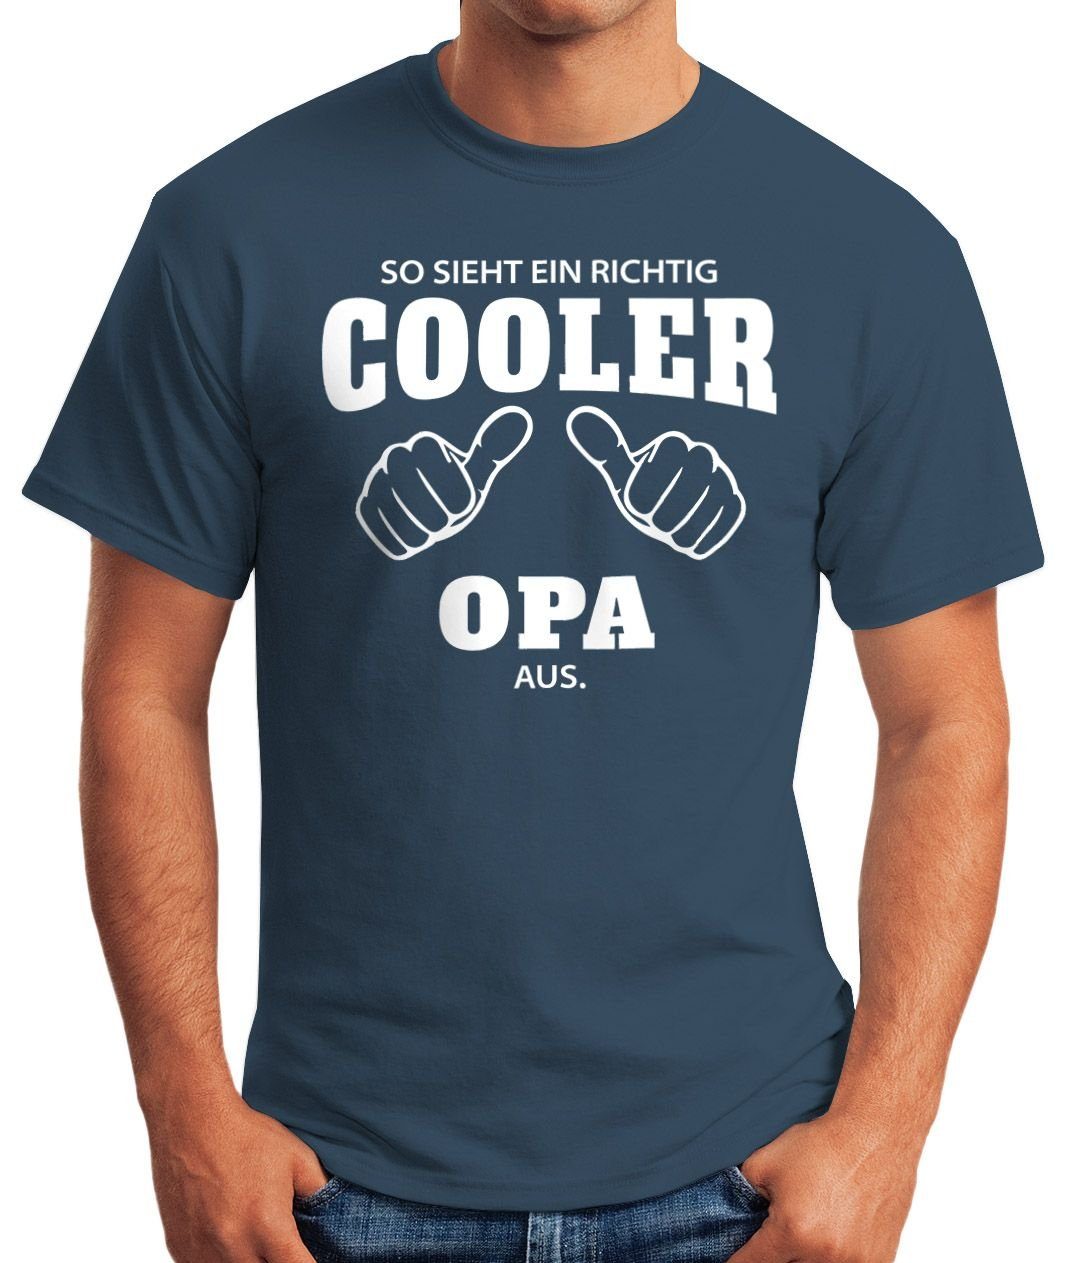 MoonWorks Fun-Shirt Object] richtig sieht aus Opa richtig Print Moonworks® T-Shirt blau mit cooler Print-Shirt ein Herren So ein [object